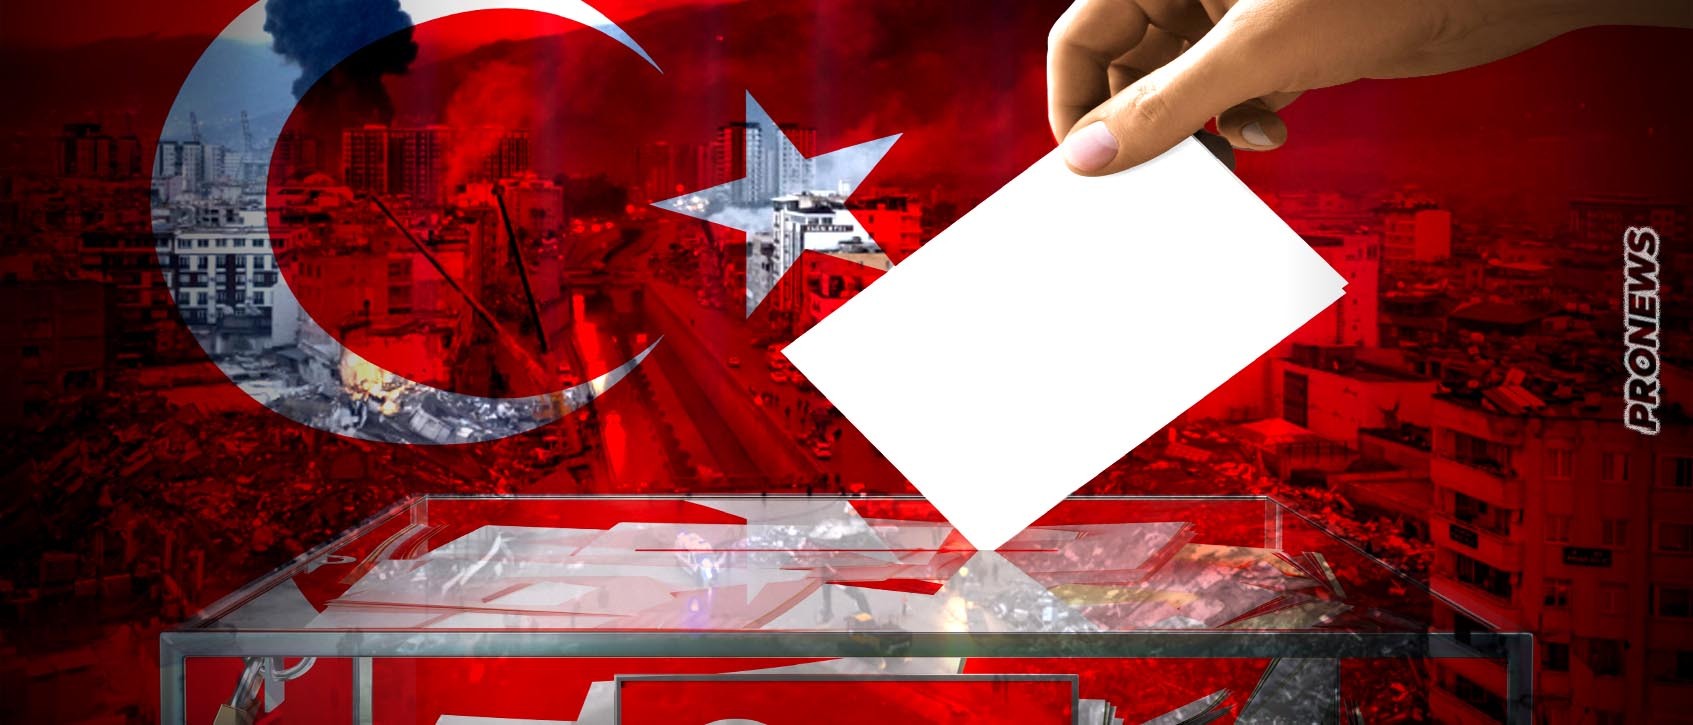 Τουρκικές εκλογές: Πόσο πιθανό είναι να αναβληθούν; – Τι προβλέπει το τουρκικό Σύνταγμα